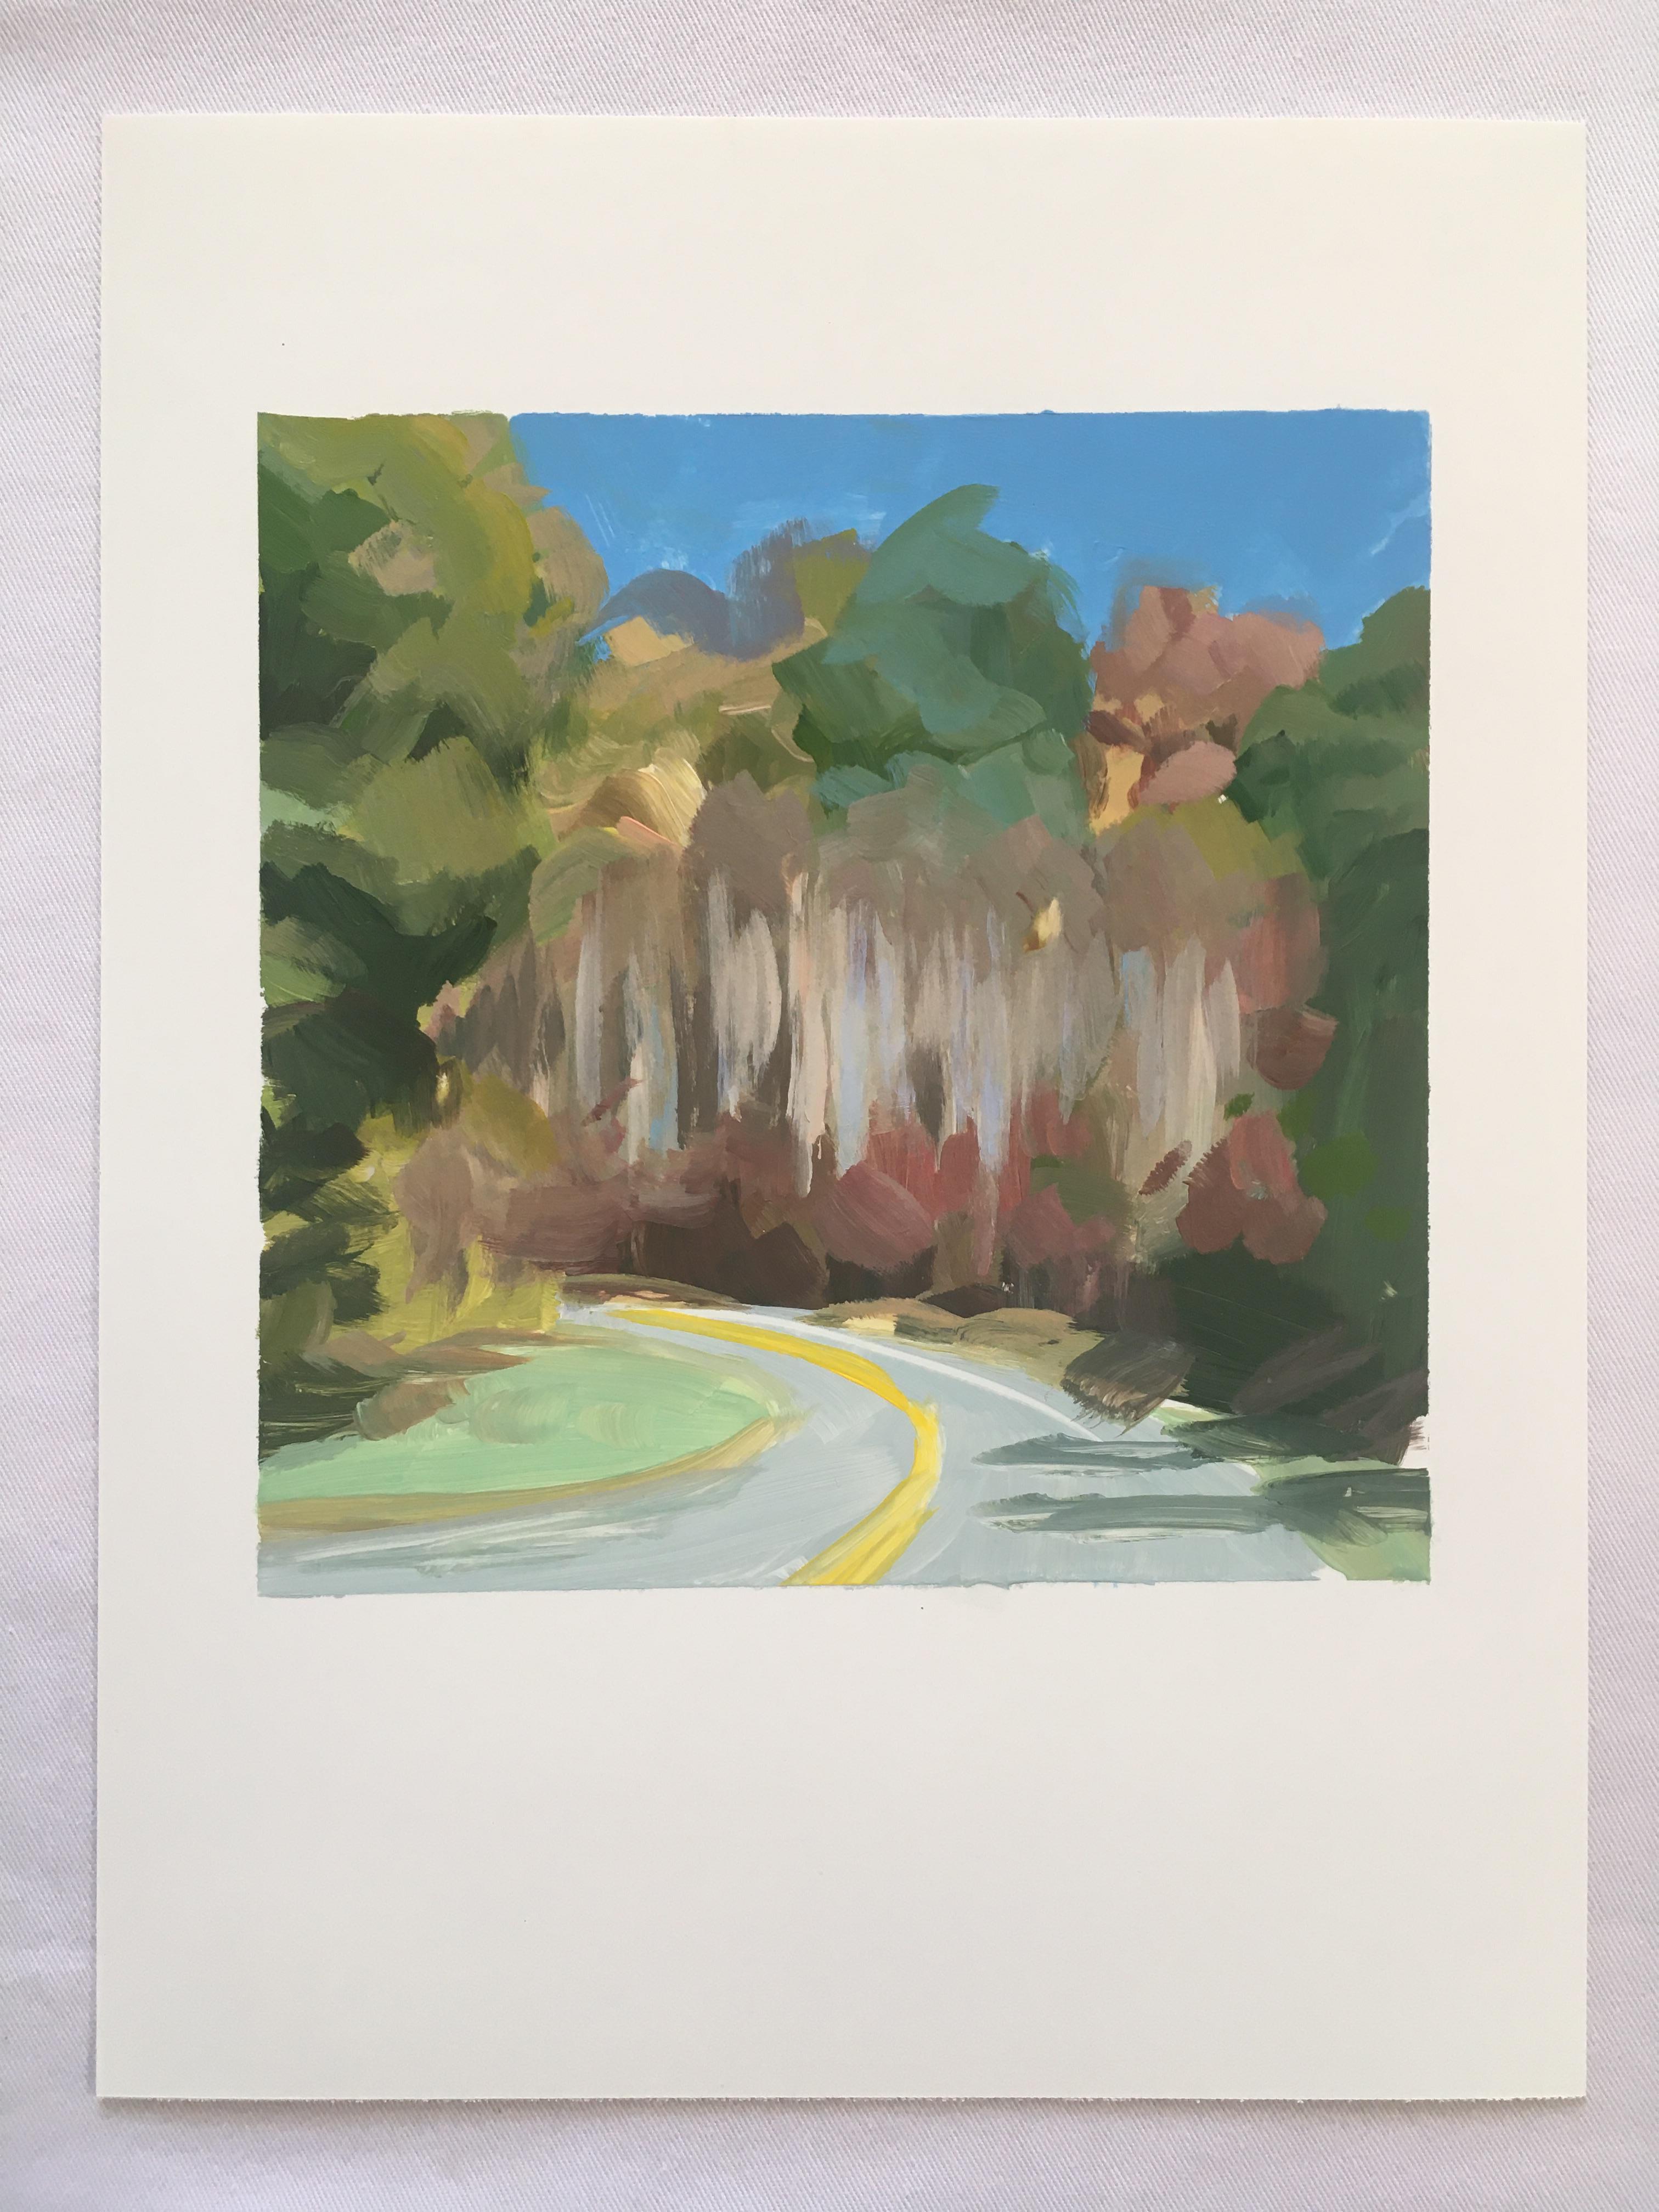 YUPO - Foliage de bord de route - Painting de Amanda Joy Brown